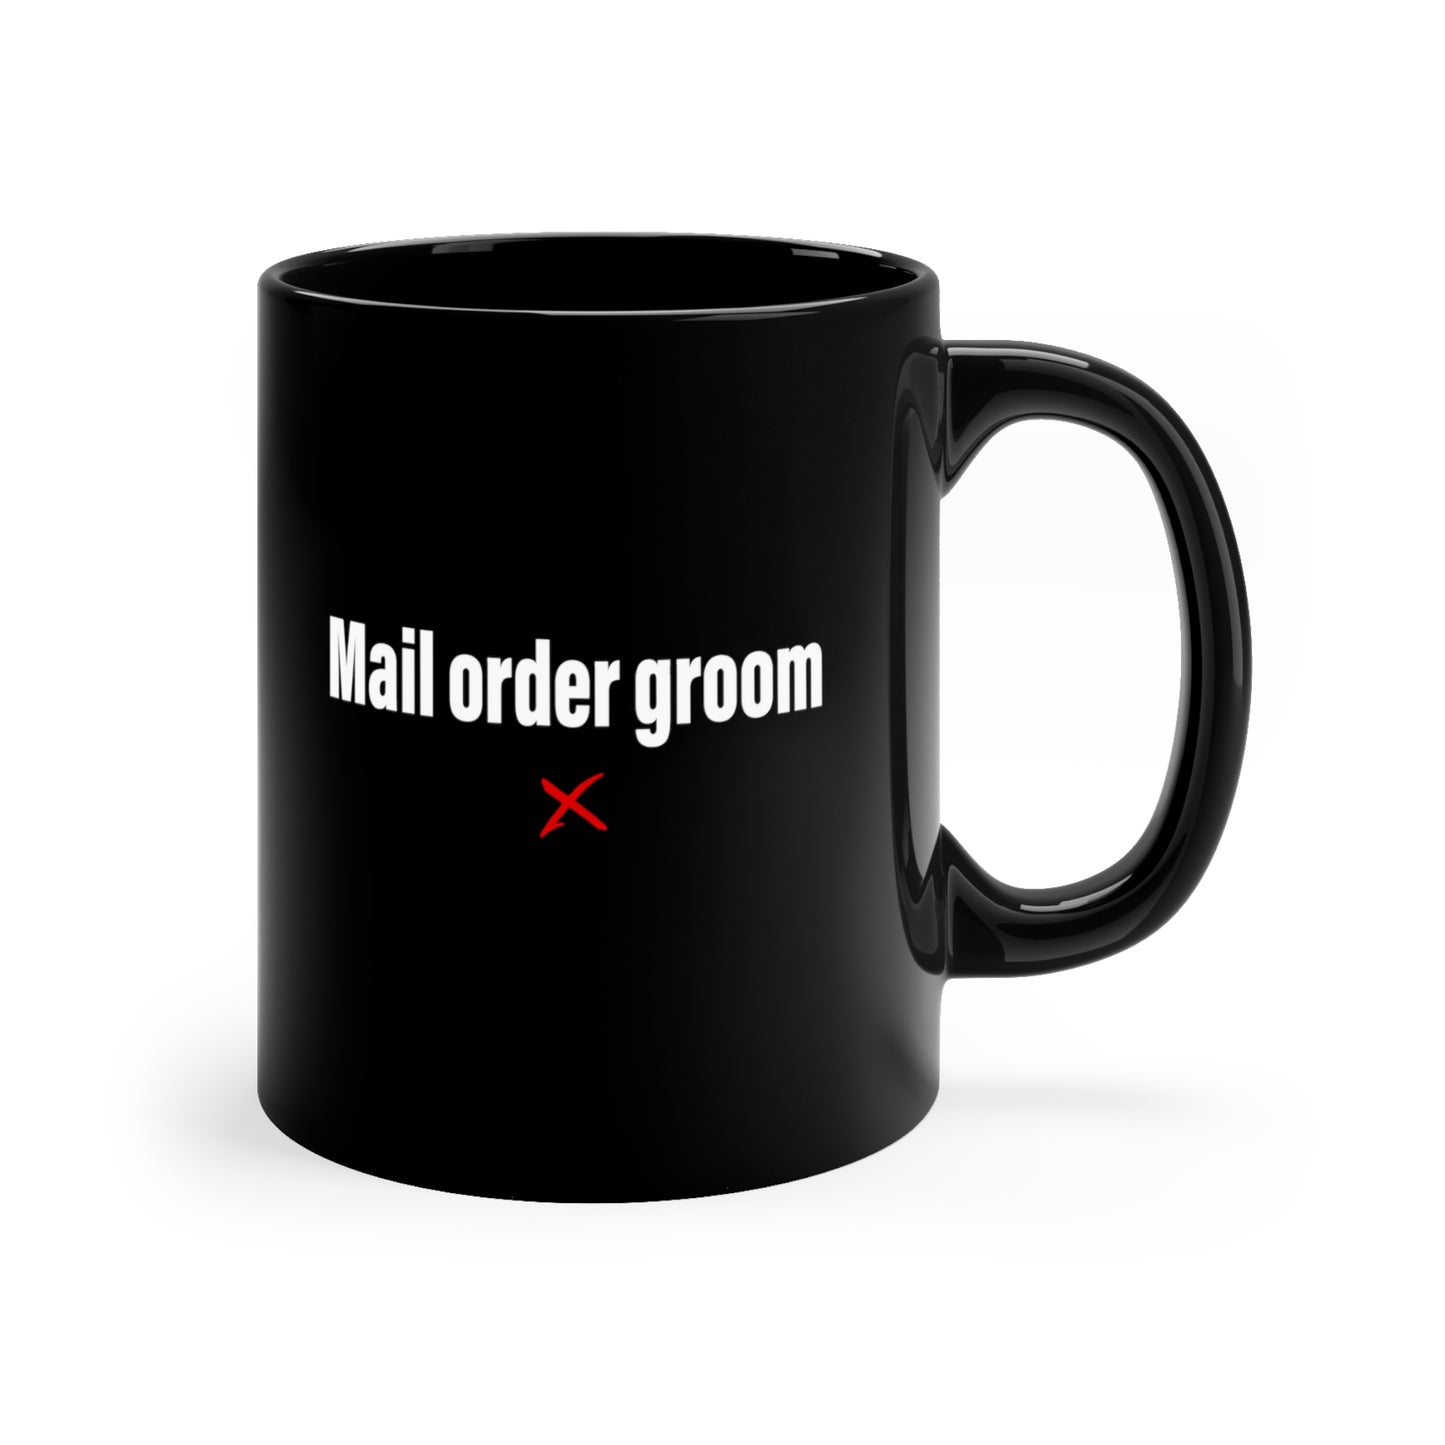 Mail order groom - Mug